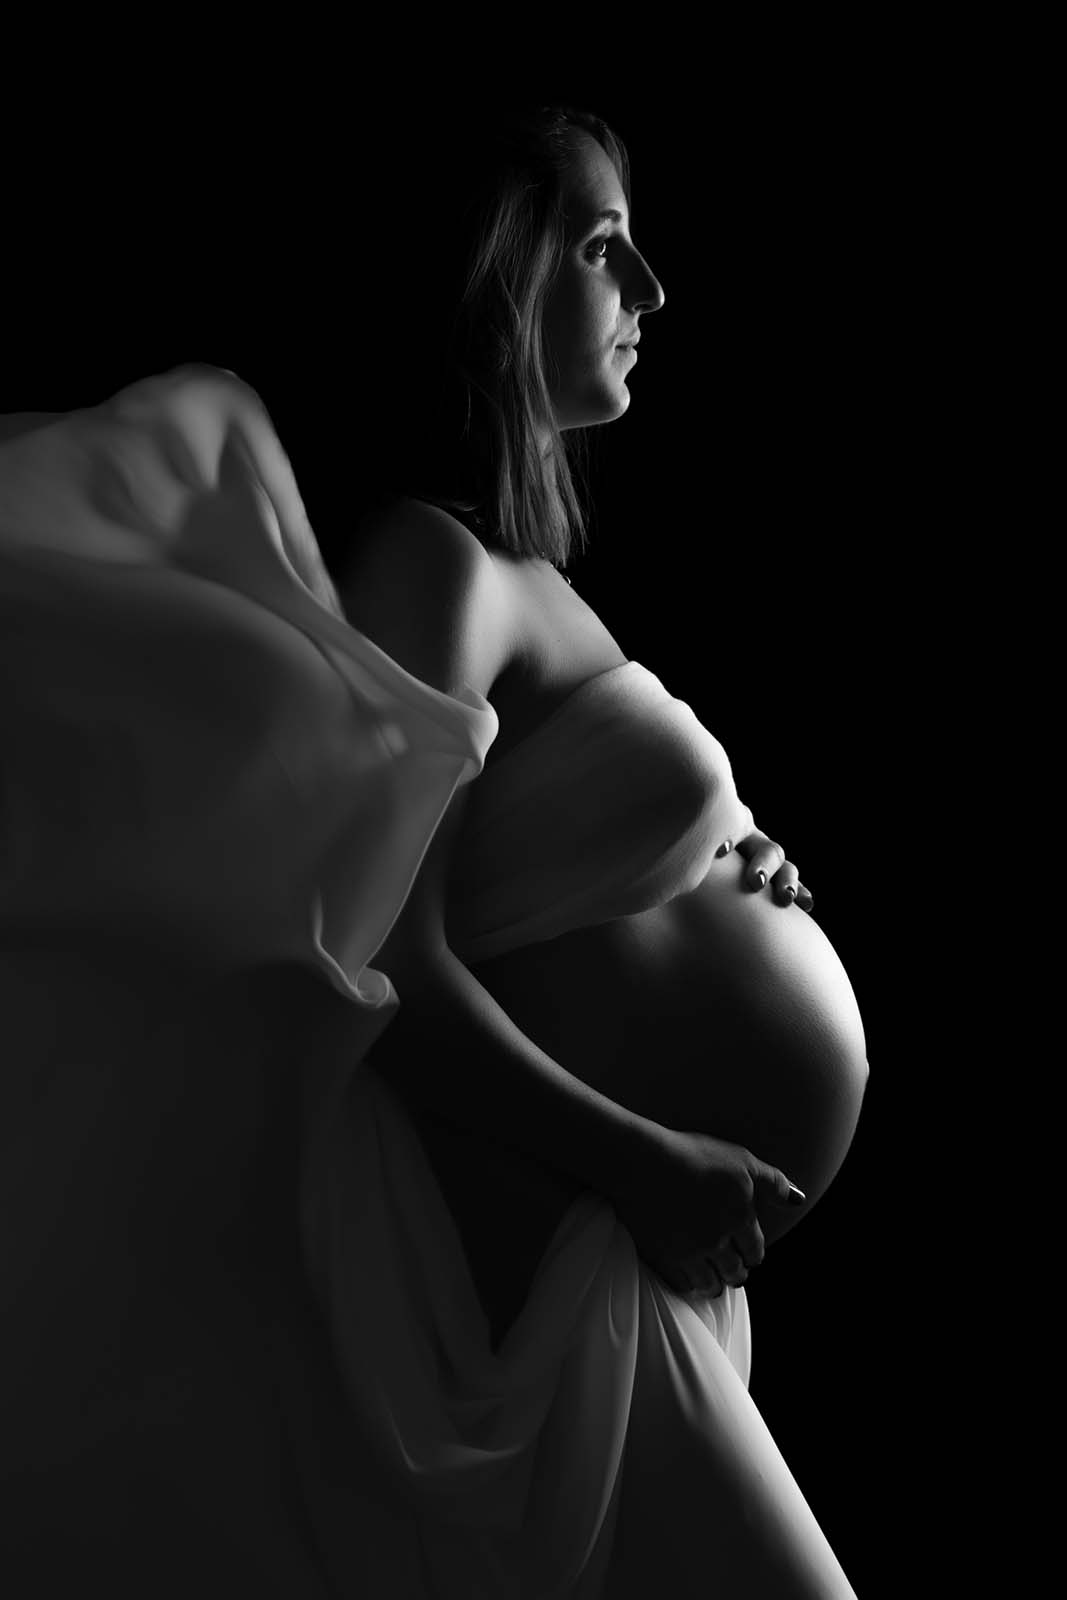 photo noir et blanc d'une femme enceinte qui est habillée d'un voile blanc volant